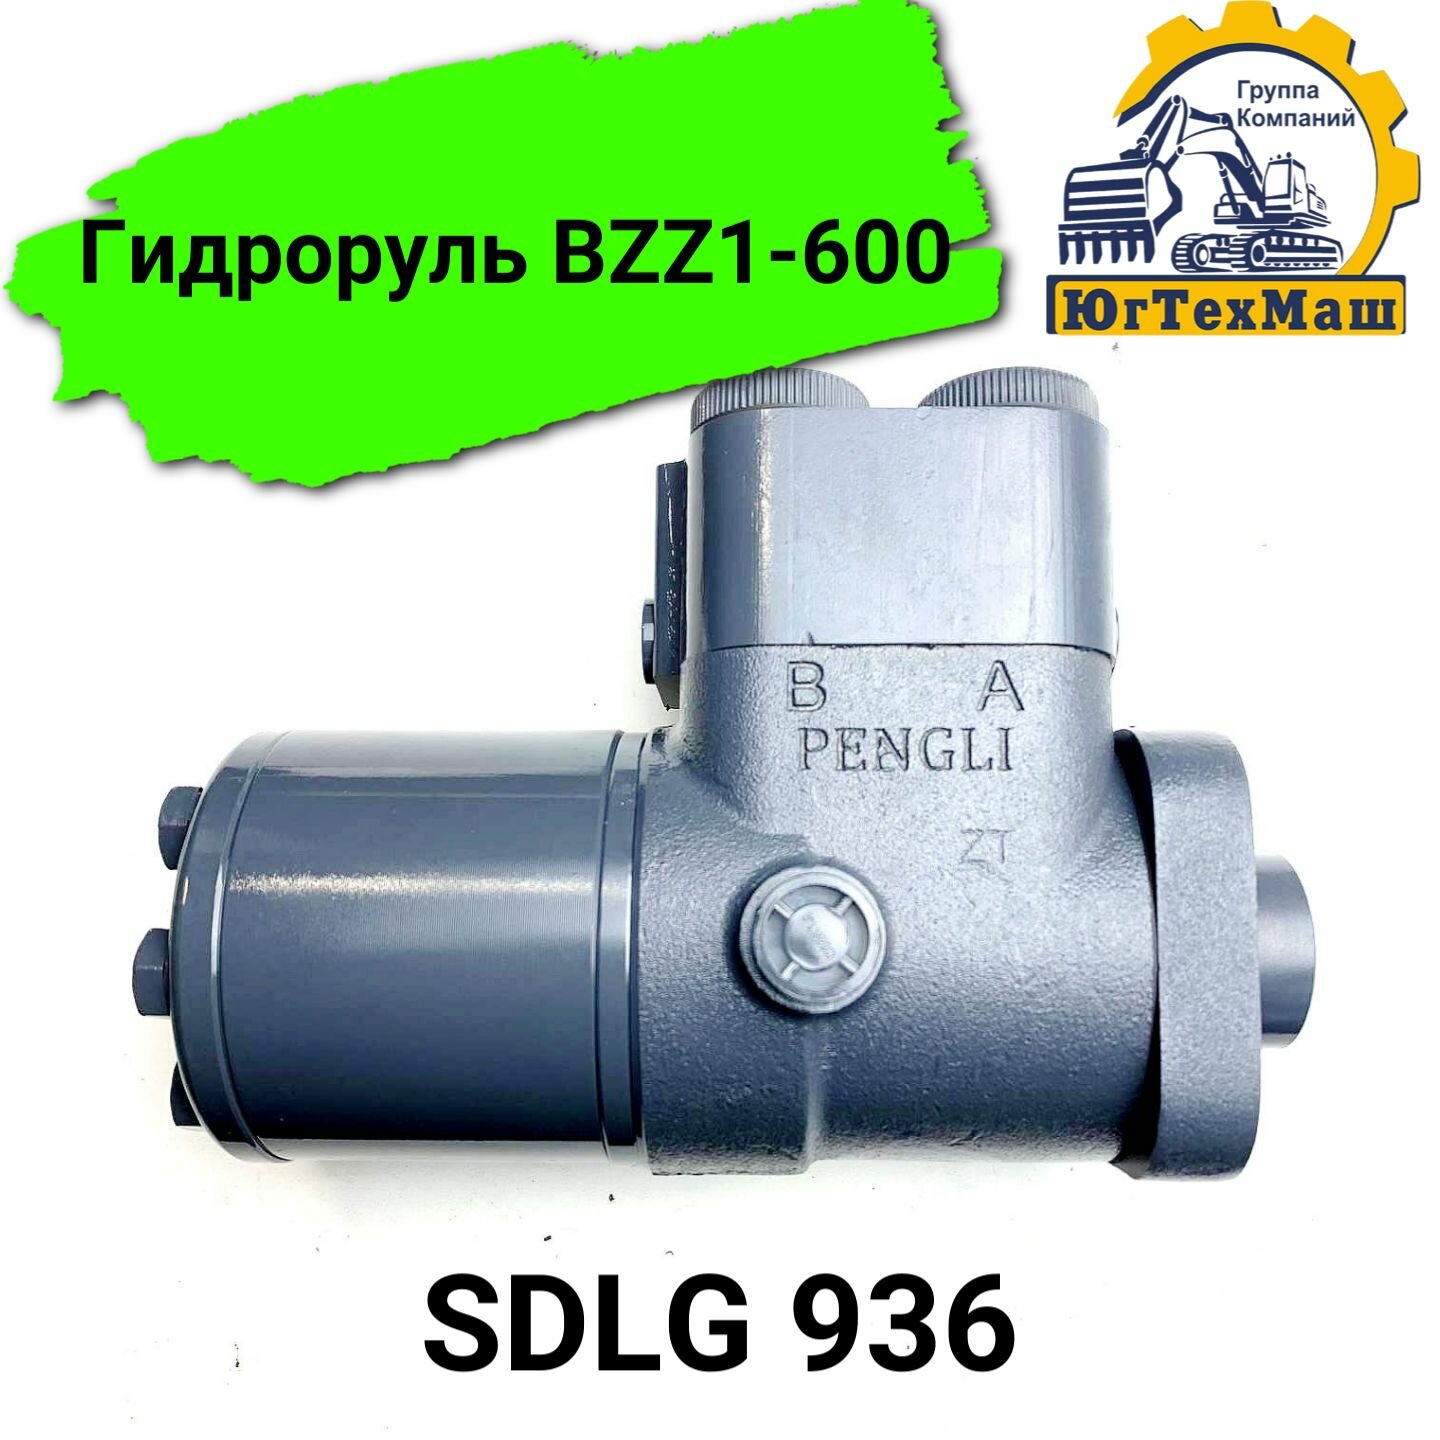 Гидроруль BZZ1-600 (SDLG 936)